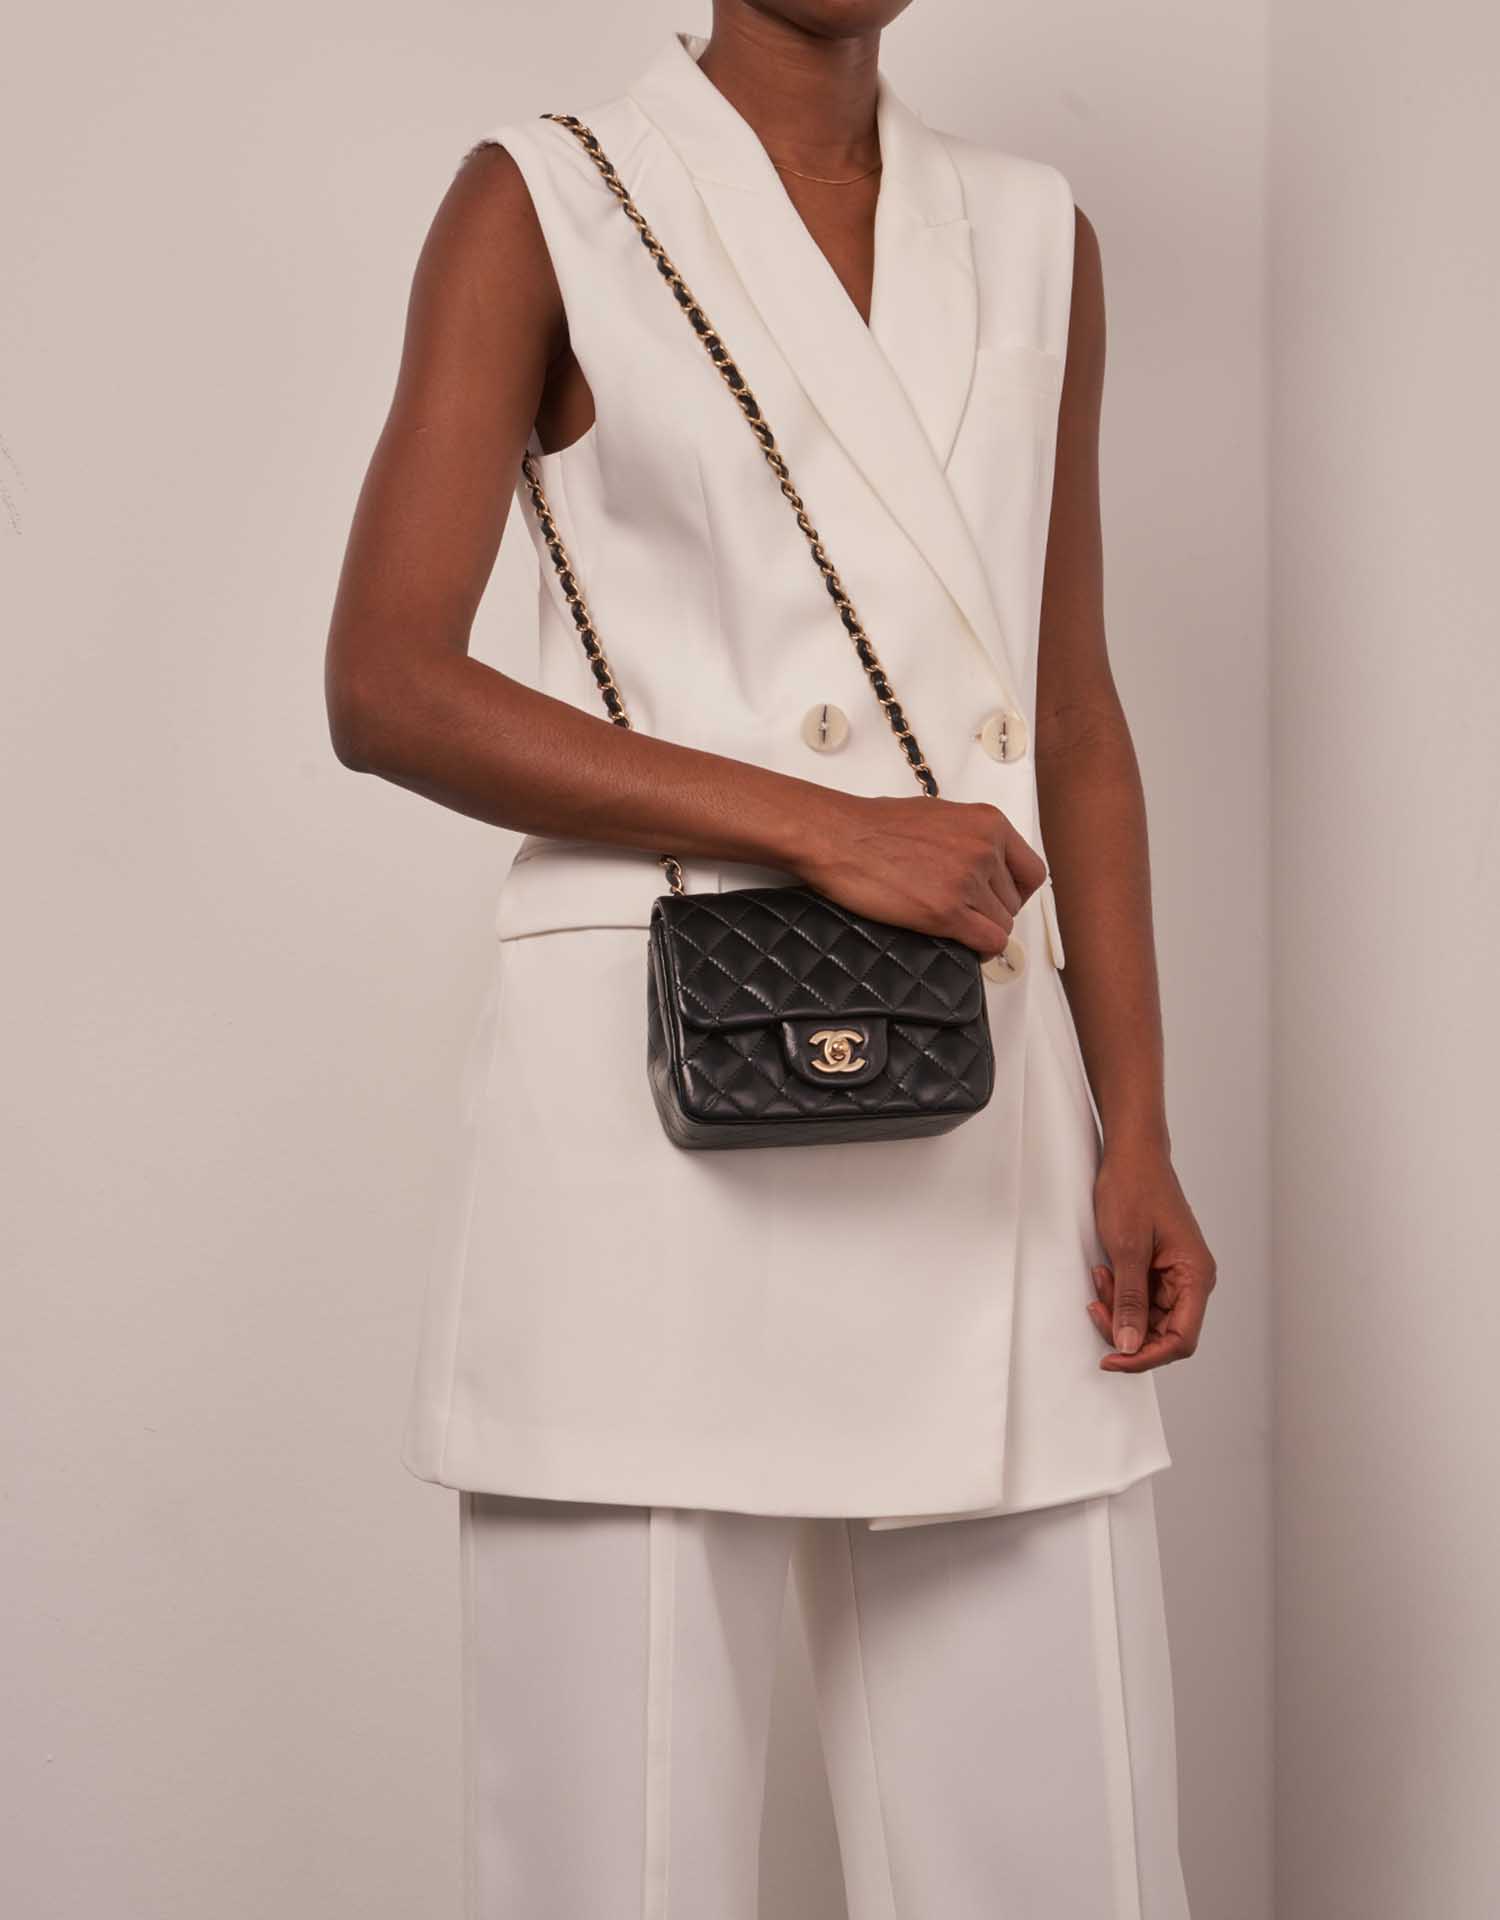 Chanel Timeless MiniRectangular Schwarz Größen Getragen | Verkaufen Sie Ihre Designer-Tasche auf Saclab.com